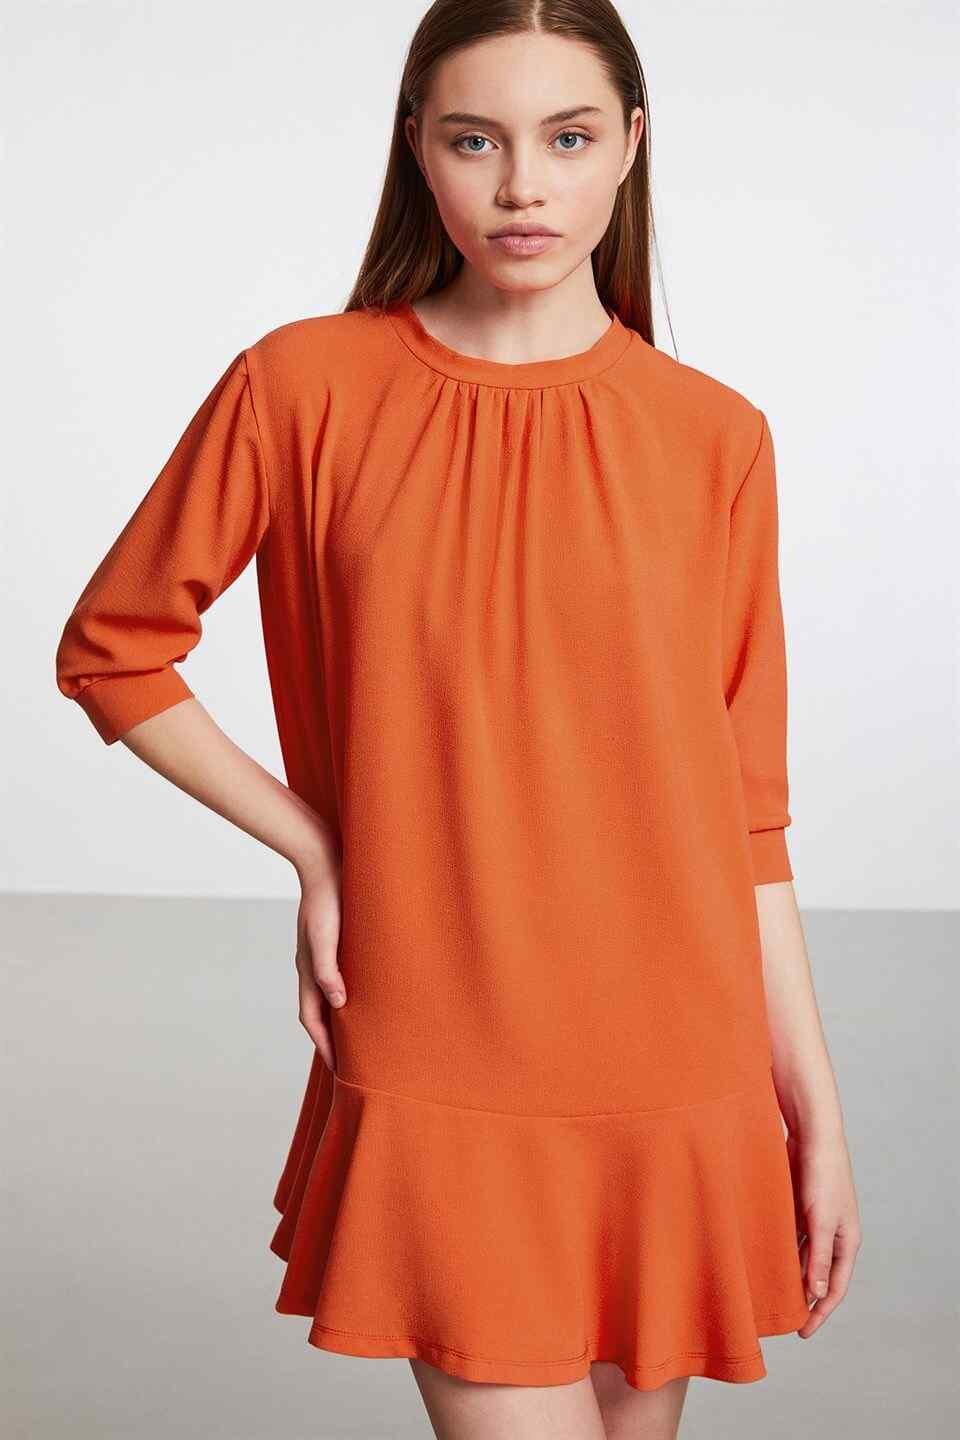 MALAGA Kadın Nar Çiçeği Düz Renk Yuvarlak Yaka Comfort Fit Elbise